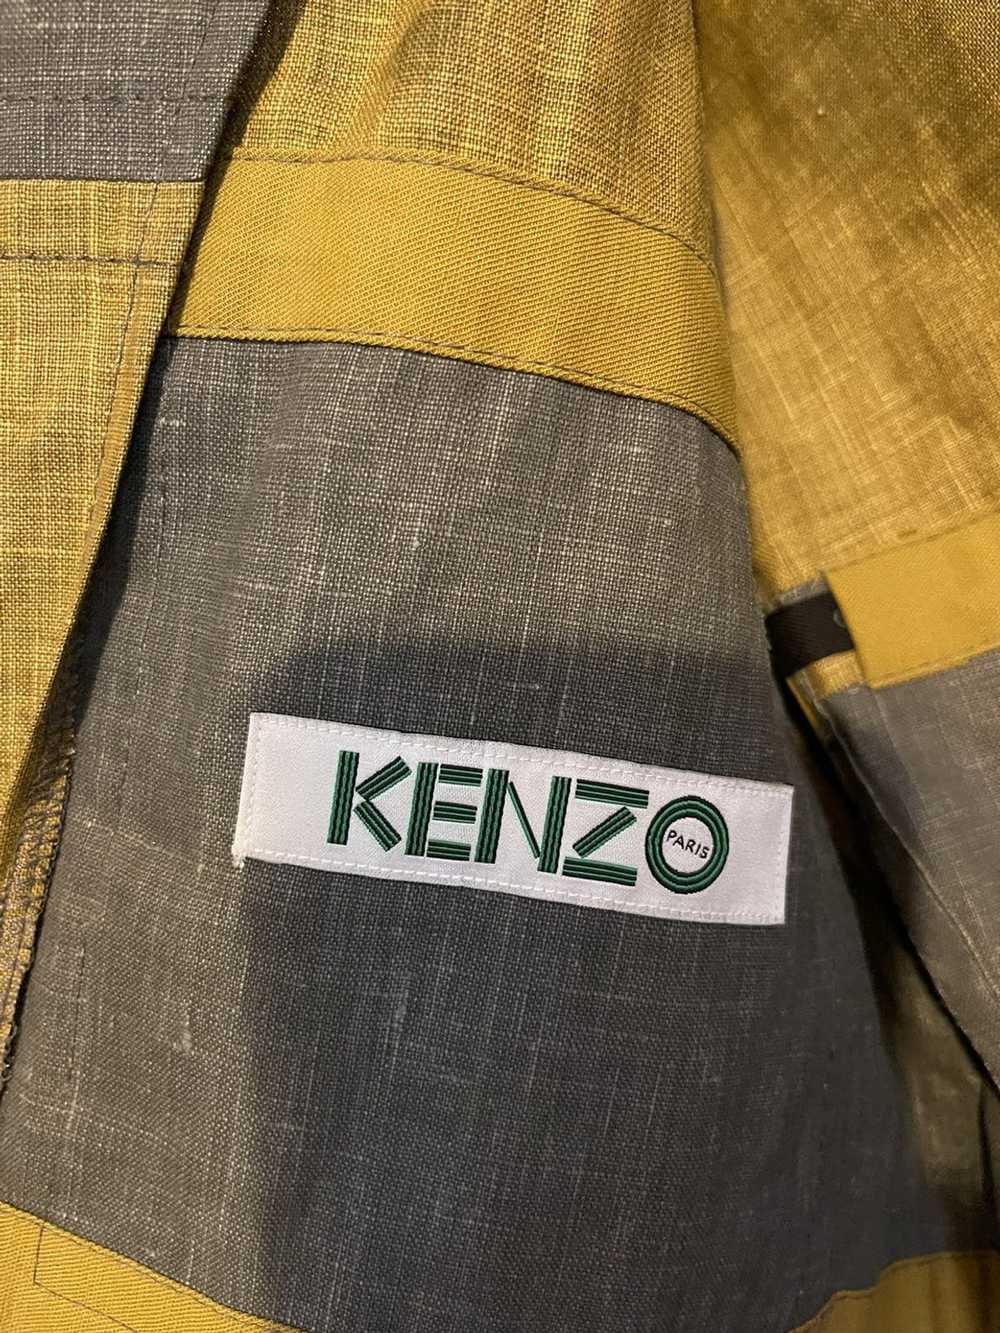 Kenzo Kenzo Patchwork Blazer - image 5